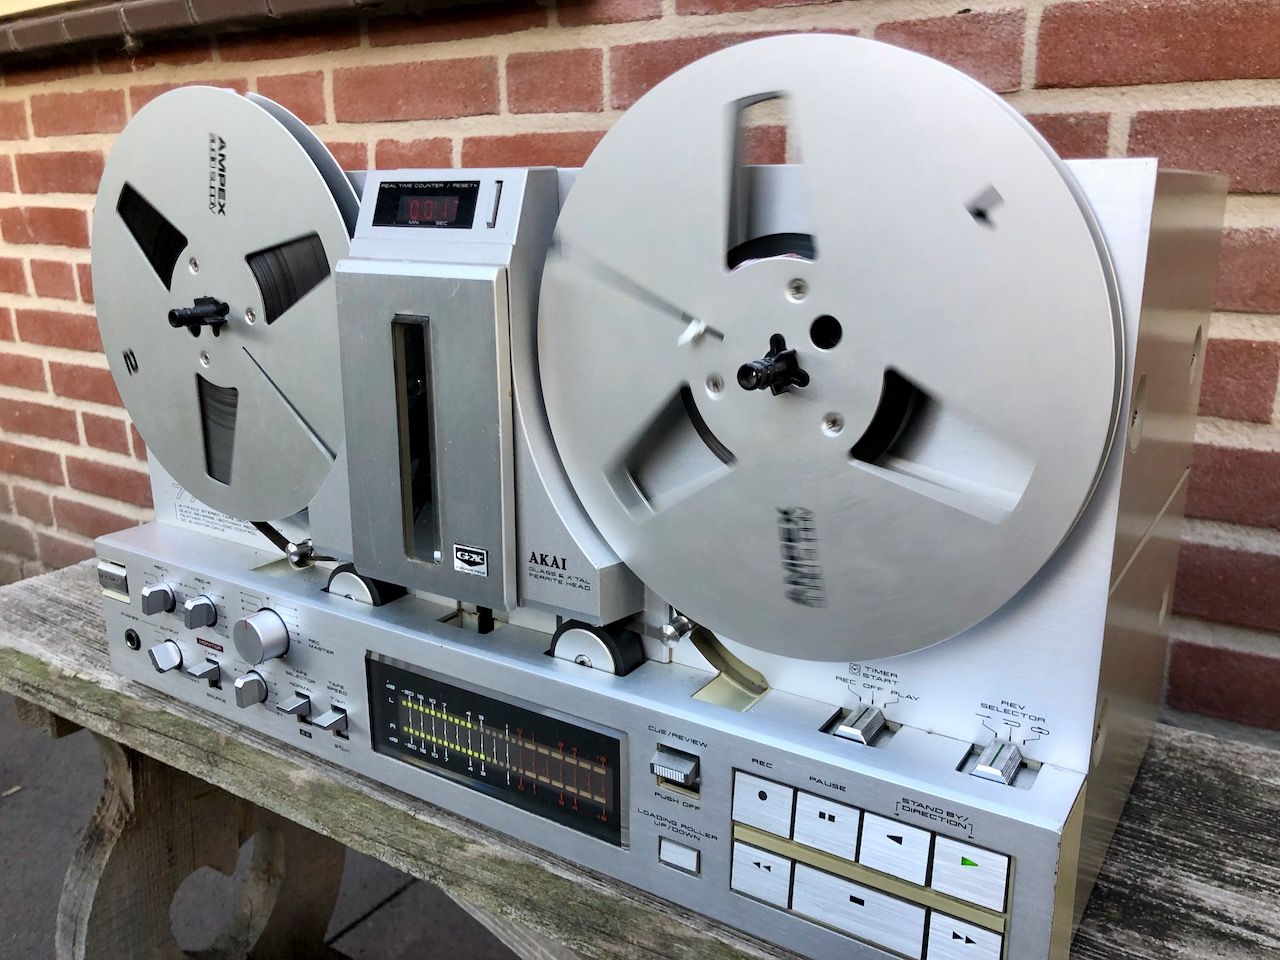 Prachtige vintage HiFi zoals een Akai GX-77 bandrecorder